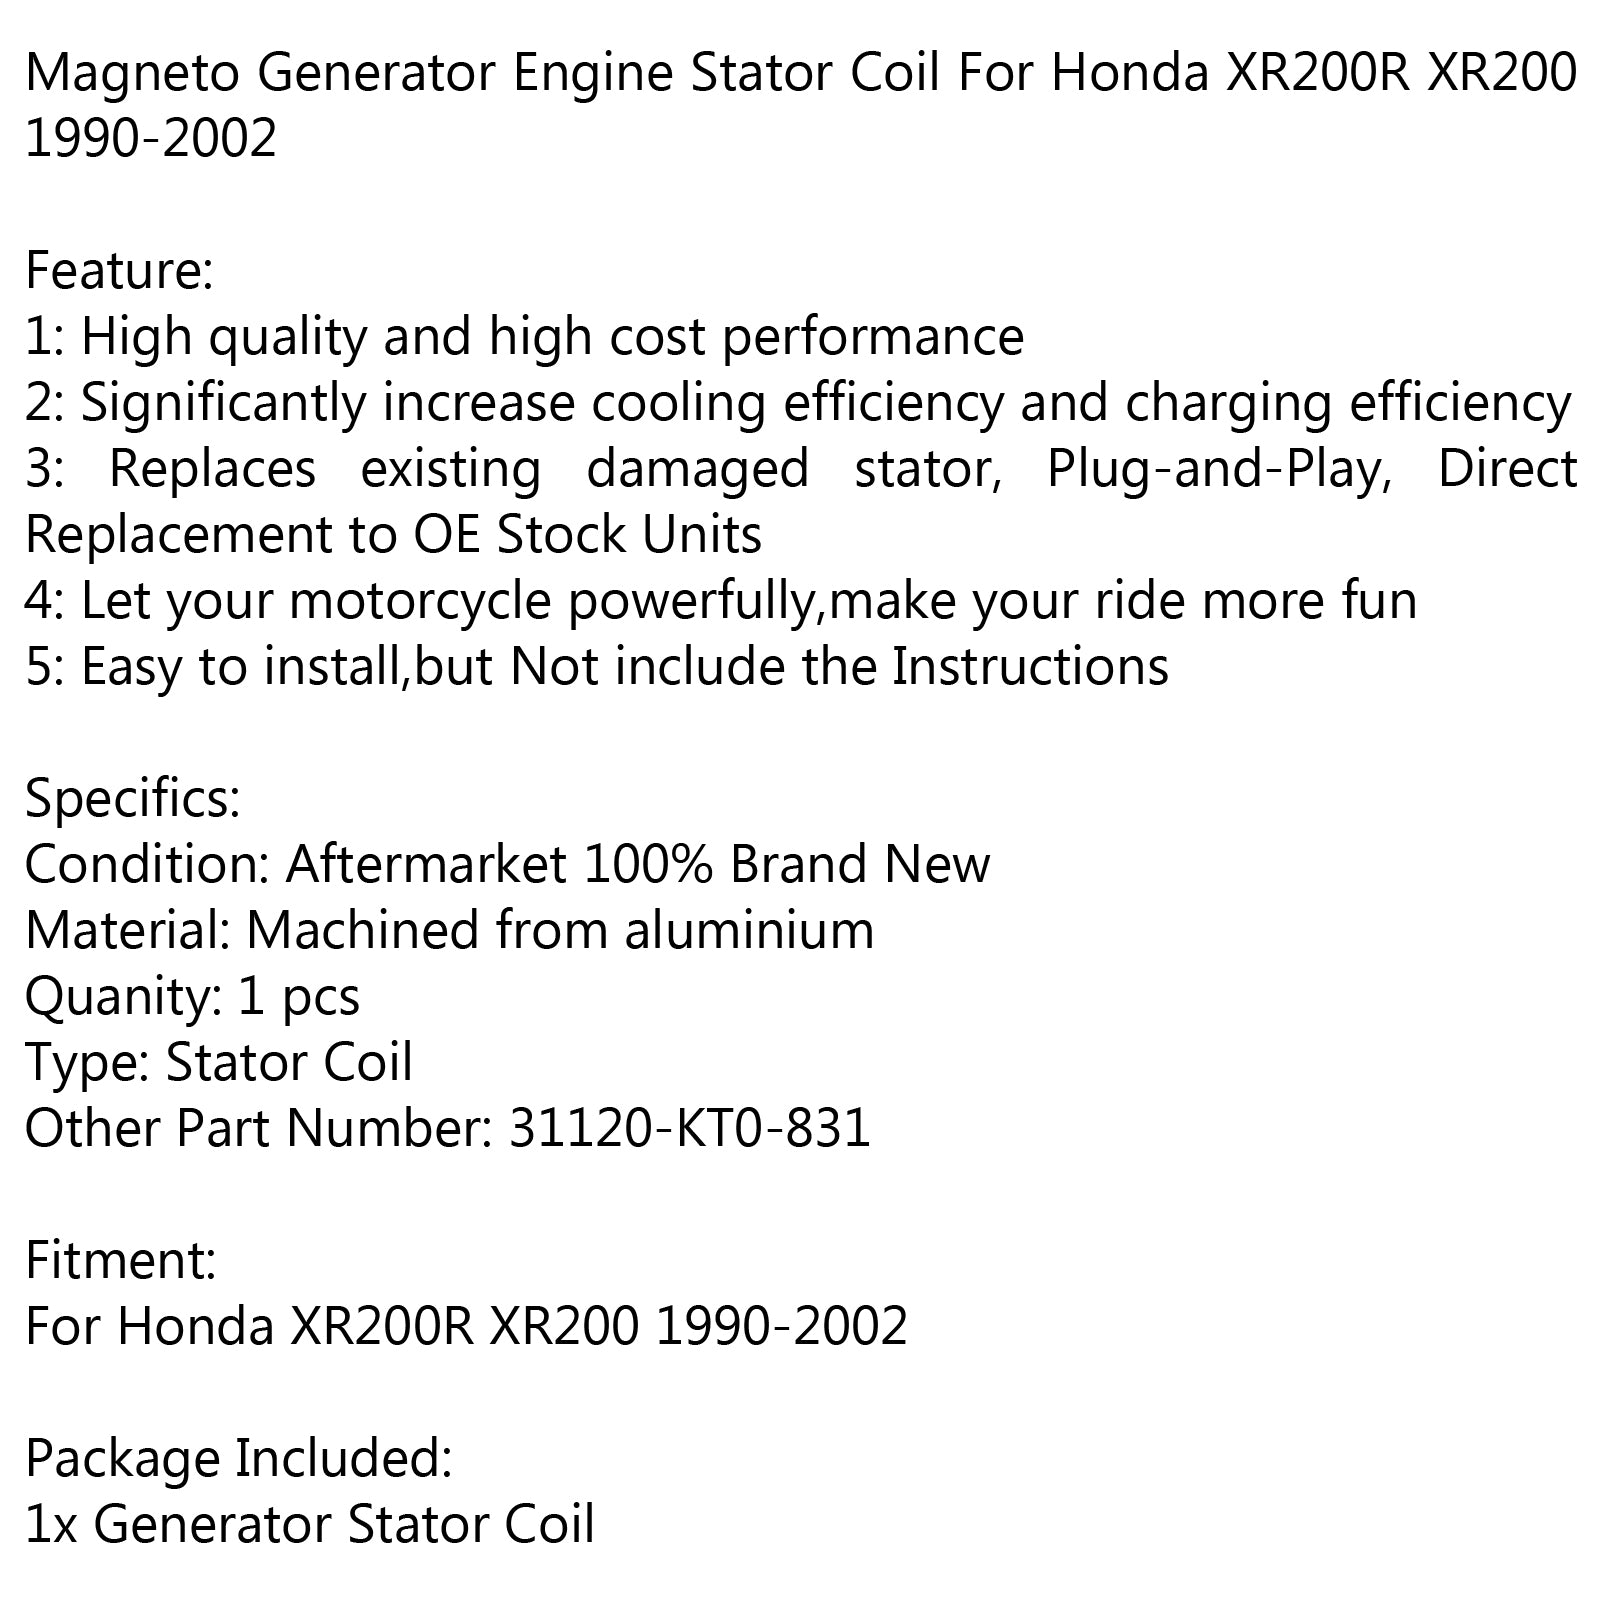 Generator Stator Coil 31120-KT0-831 For Honda XR200R XR200 1990-2002 via fedex